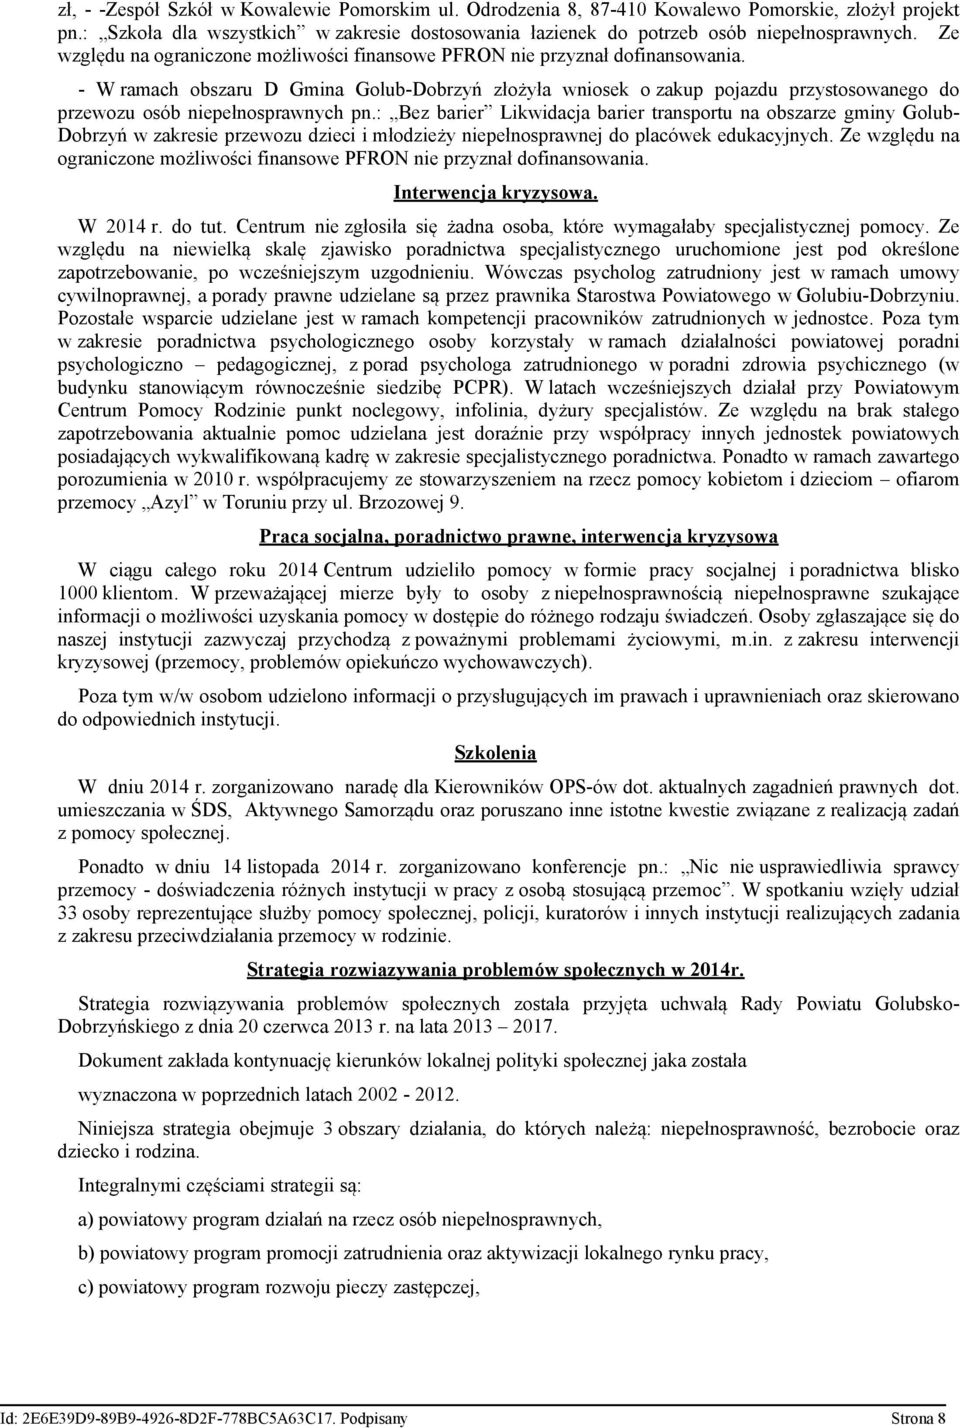 - W ramach obszaru D Gmina Golub-Dobrzyń złożyła wniosek o zakup pojazdu przystosowanego do przewozu osób niepełnosprawnych pn.